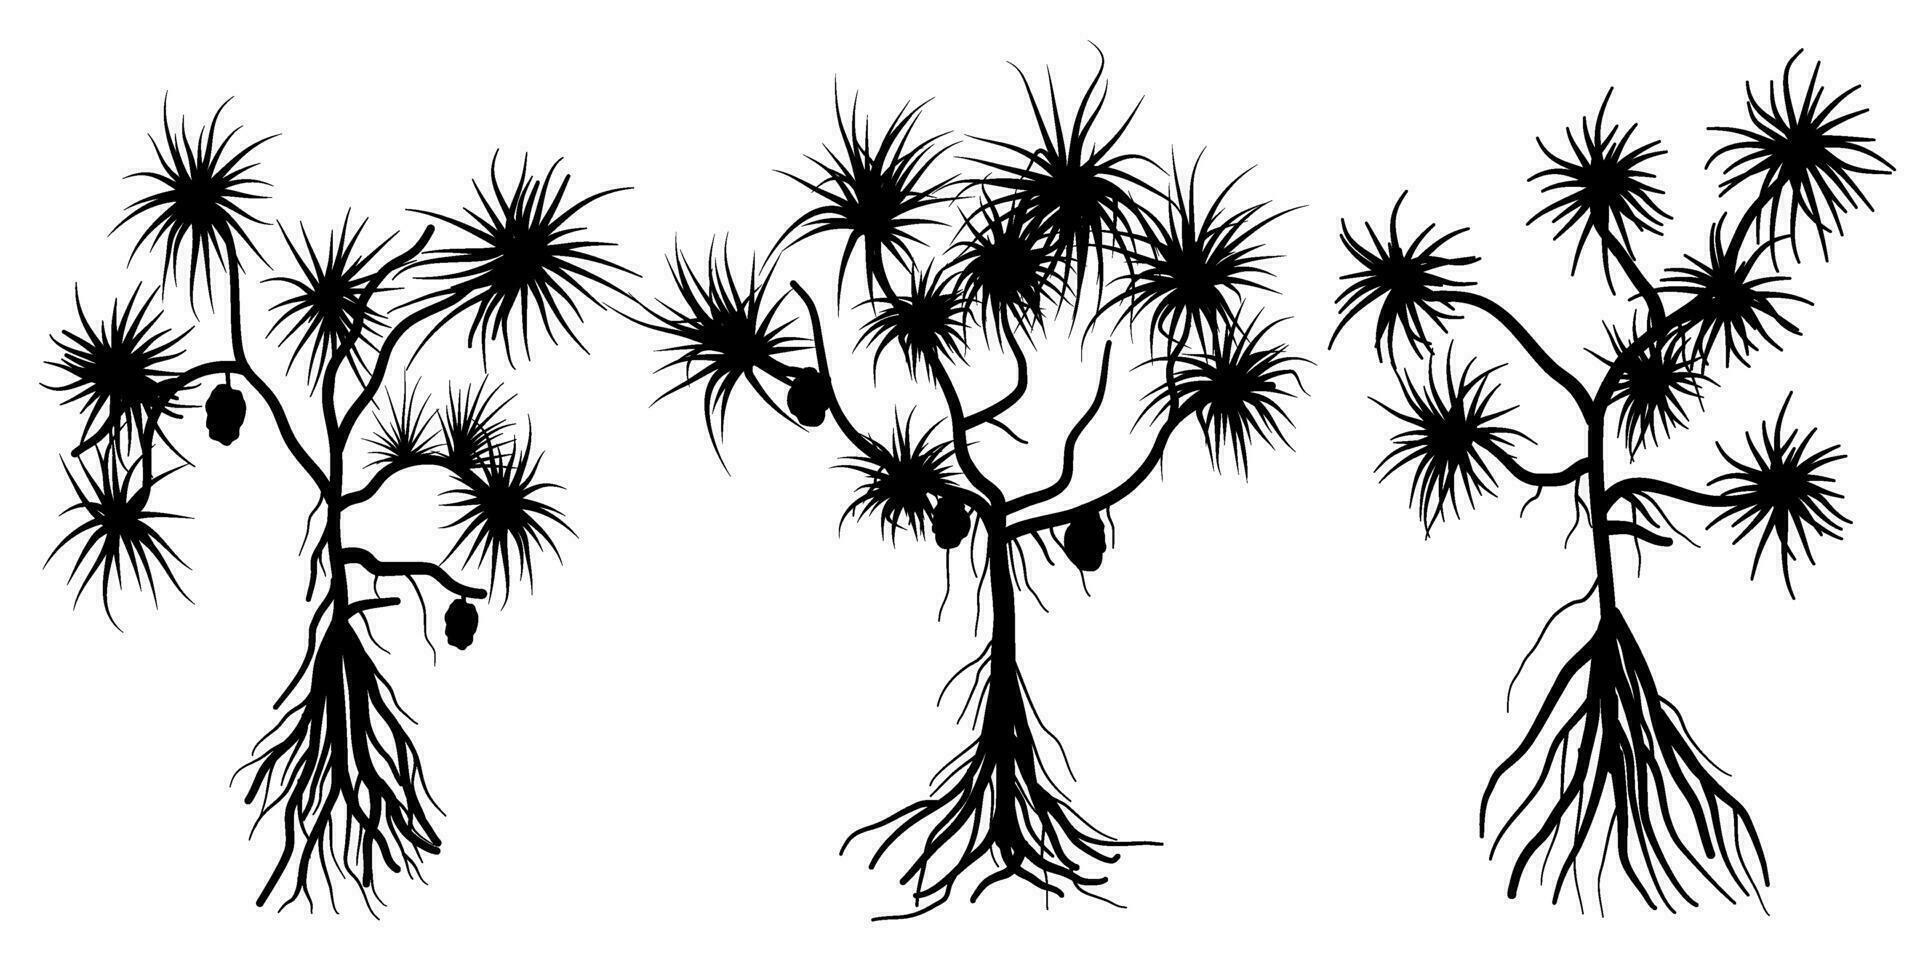 pandanus tectorius comúnmente llamado tornillo pino, tropical árbol silueta vector